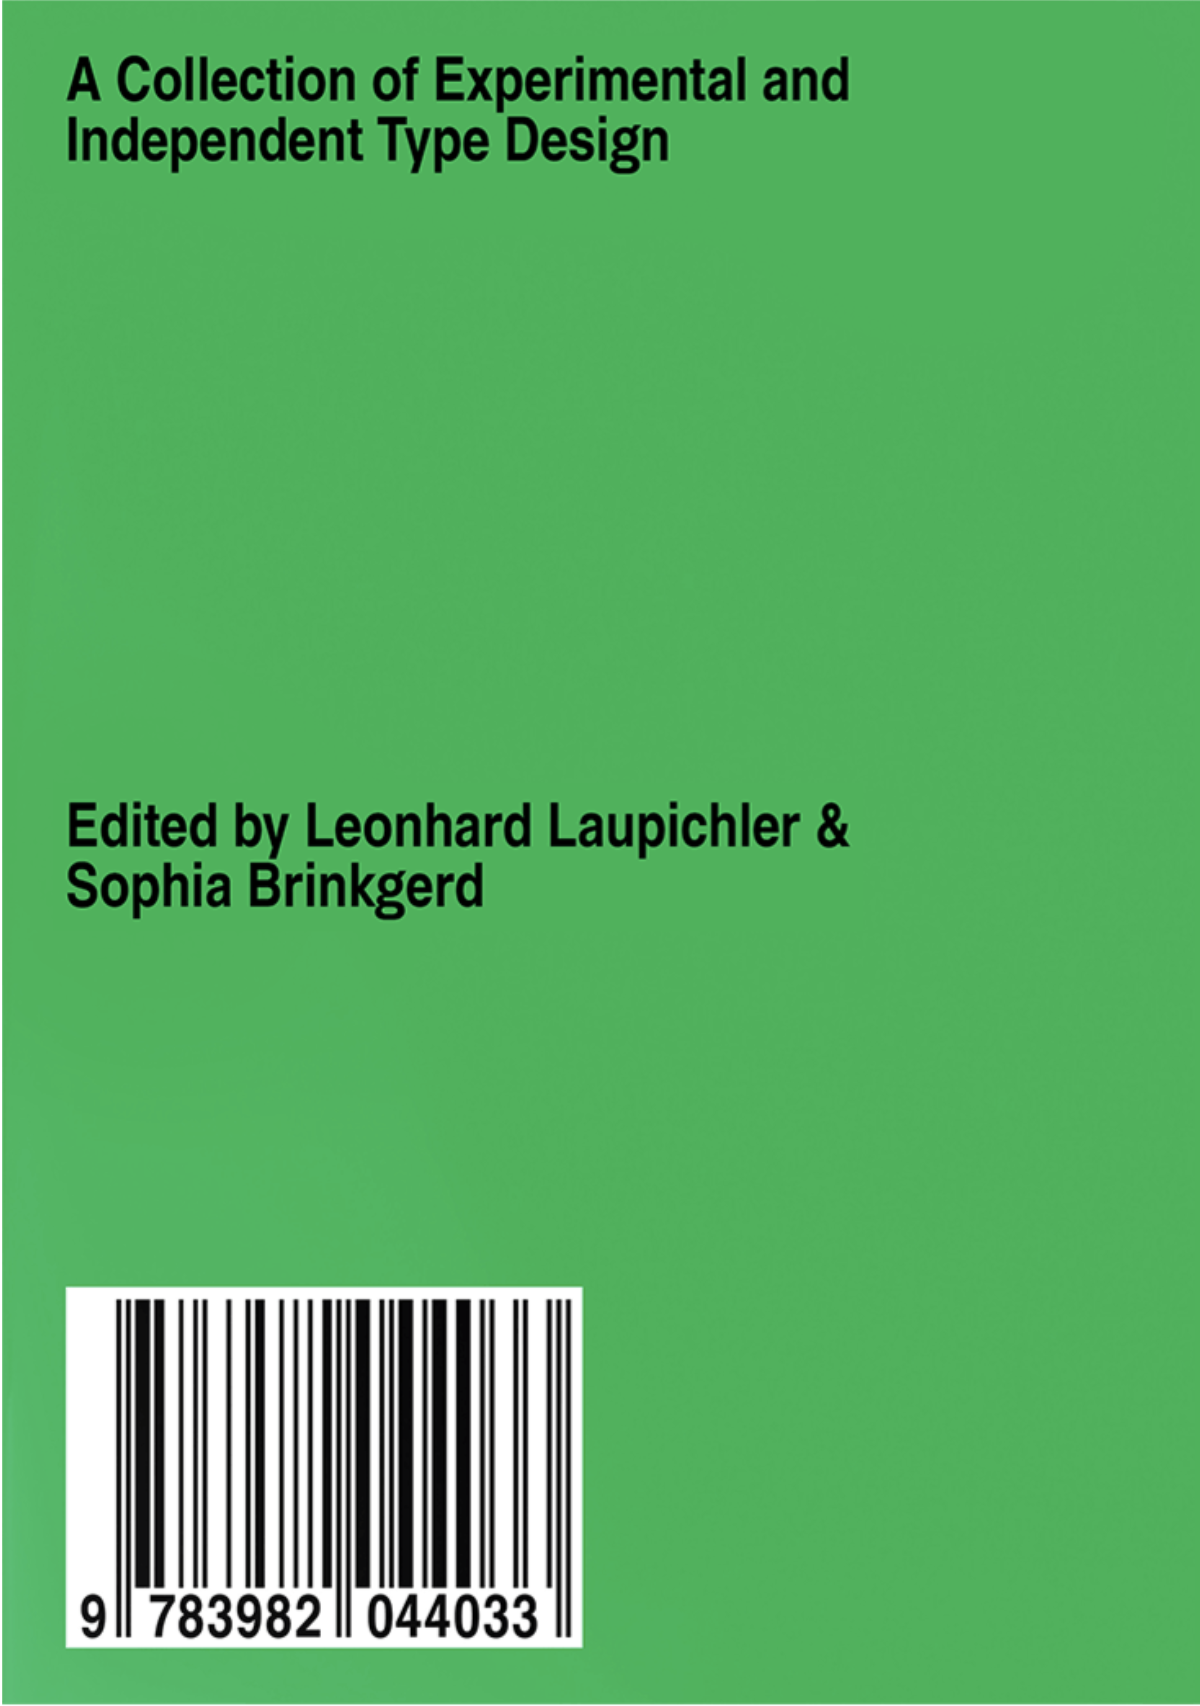 Leonhard Laupichler, Sophia Brinkgerd — New Aesthetic 2